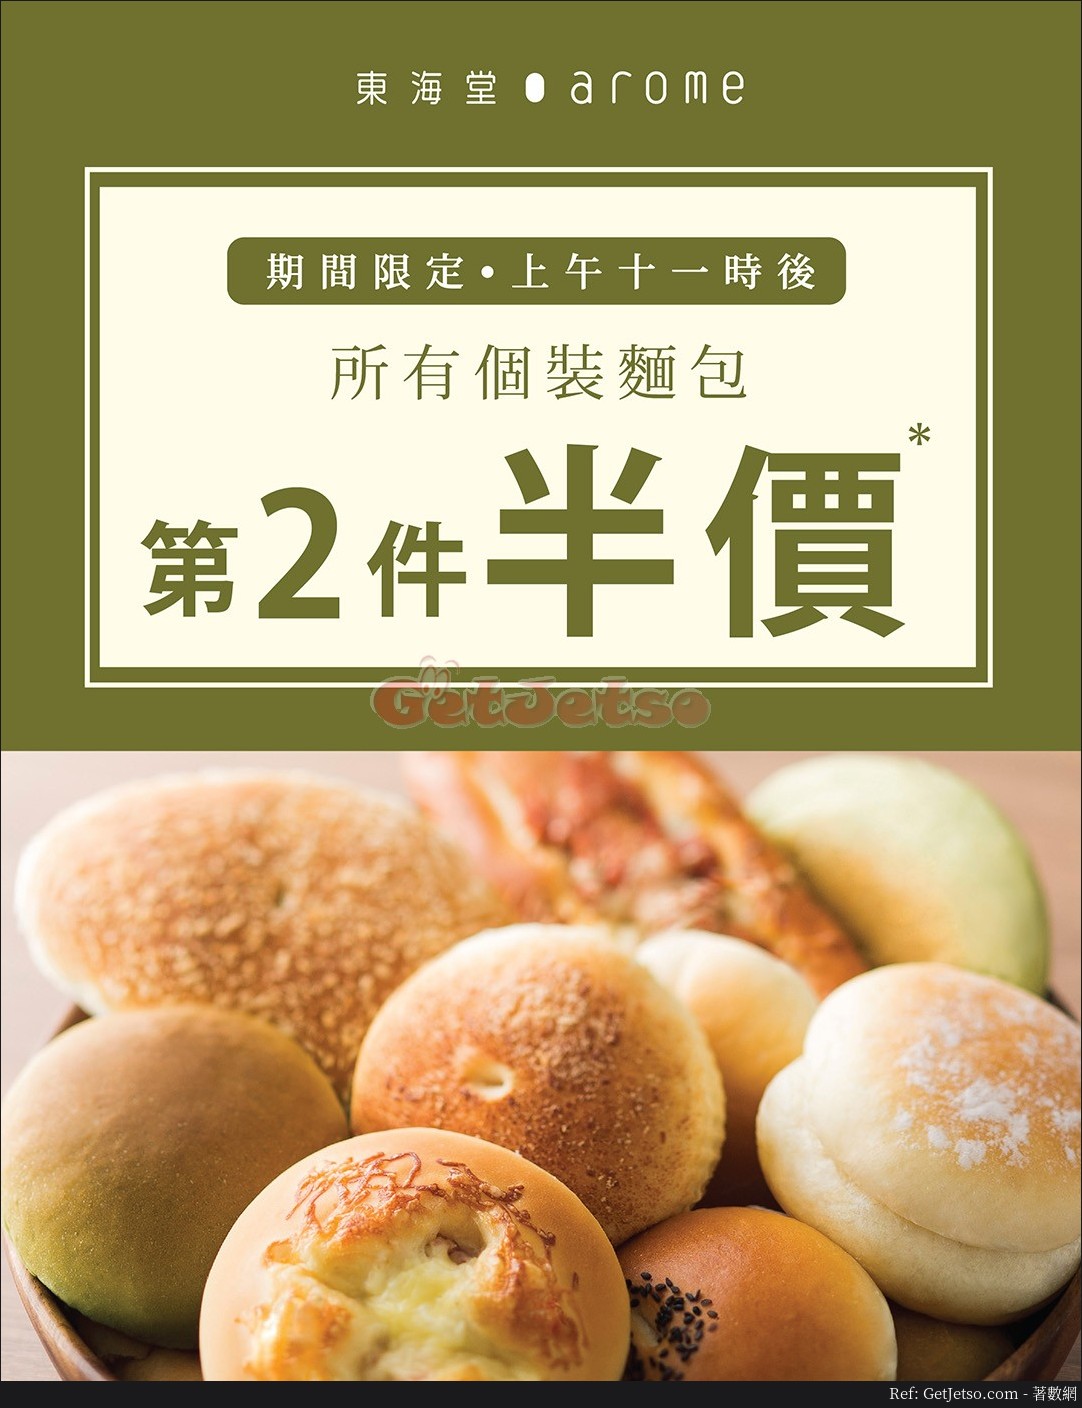 東海堂個裝麵包第2件袋半價優惠(至20年4月3日)圖片1